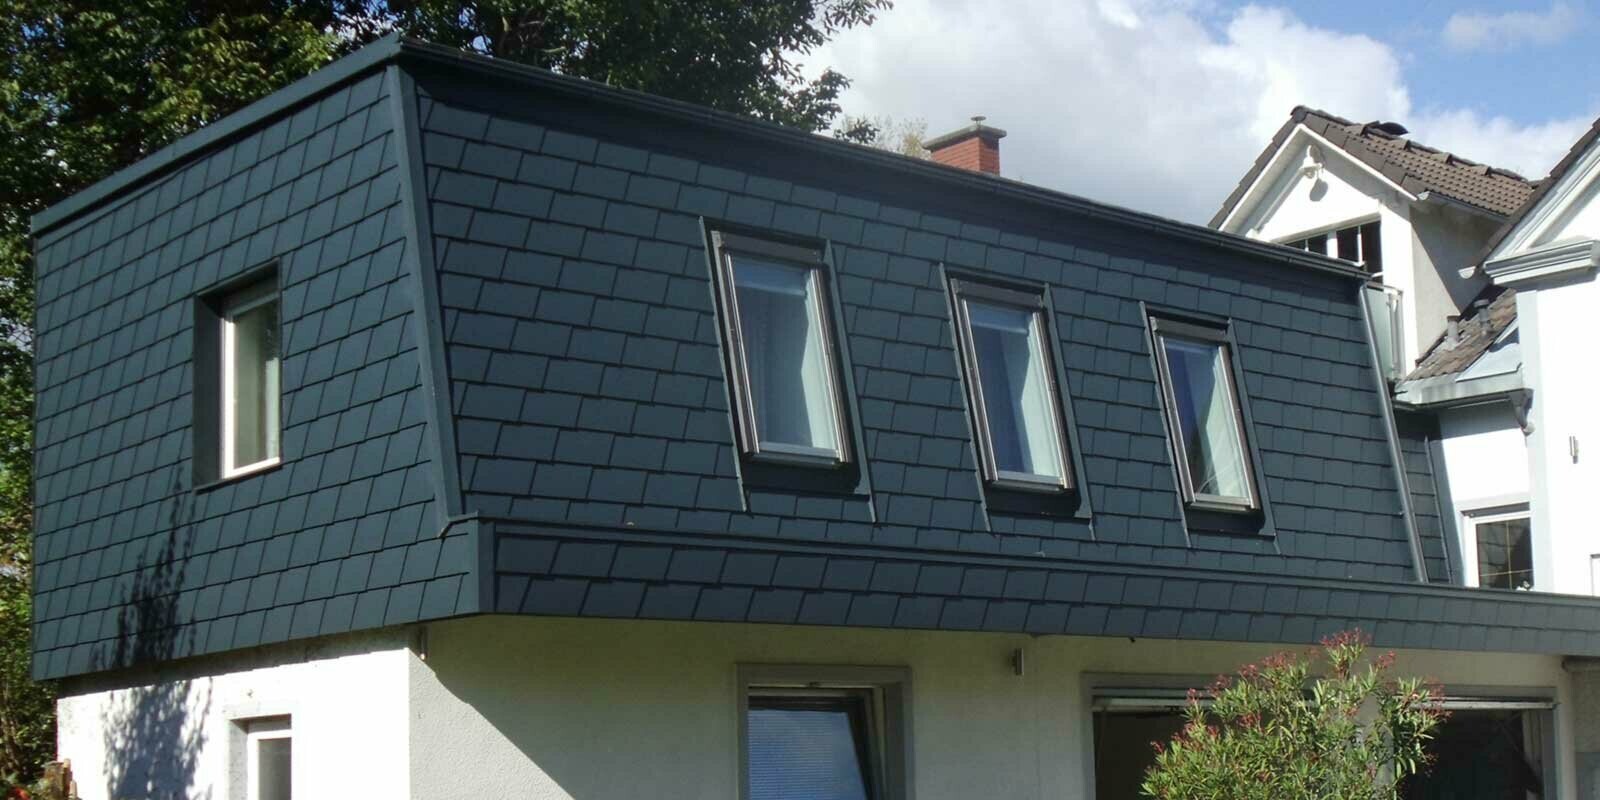 Aménagement de toit à l’aide de bardeaux de toiture PREFA, ajout d’une nouvelle structure moderne couleur anthracite, nombreuses fenêtres